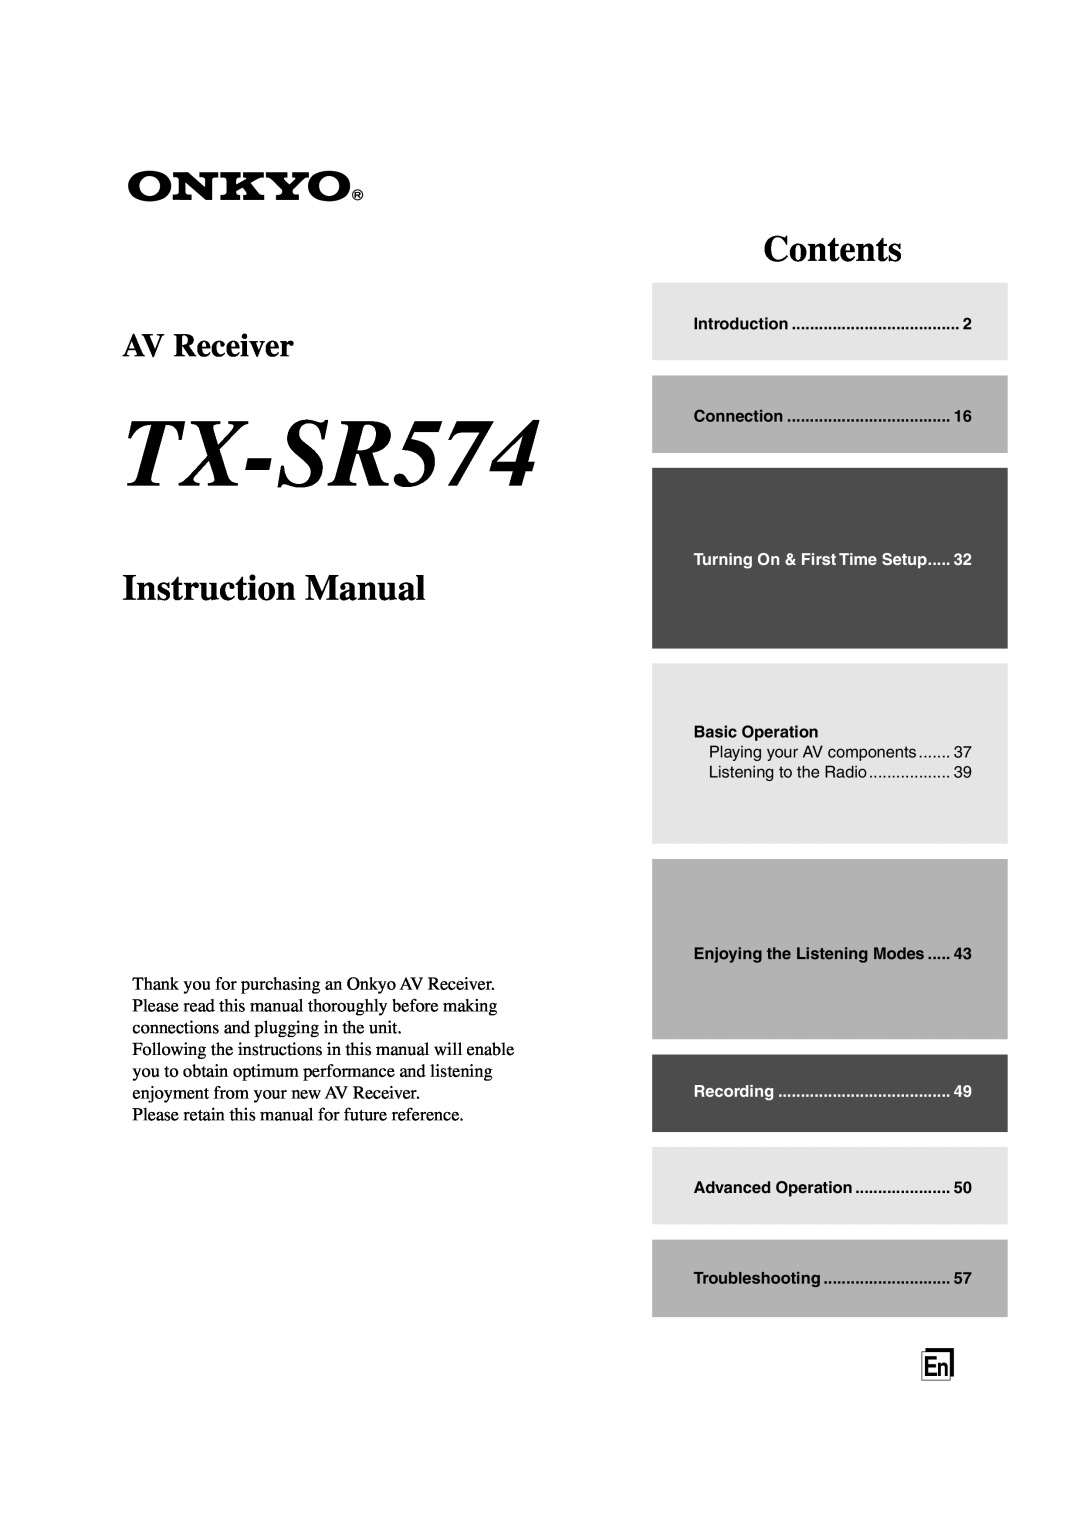 Onkyo TX-SR574 instruction manual Contents, AV Receiver 